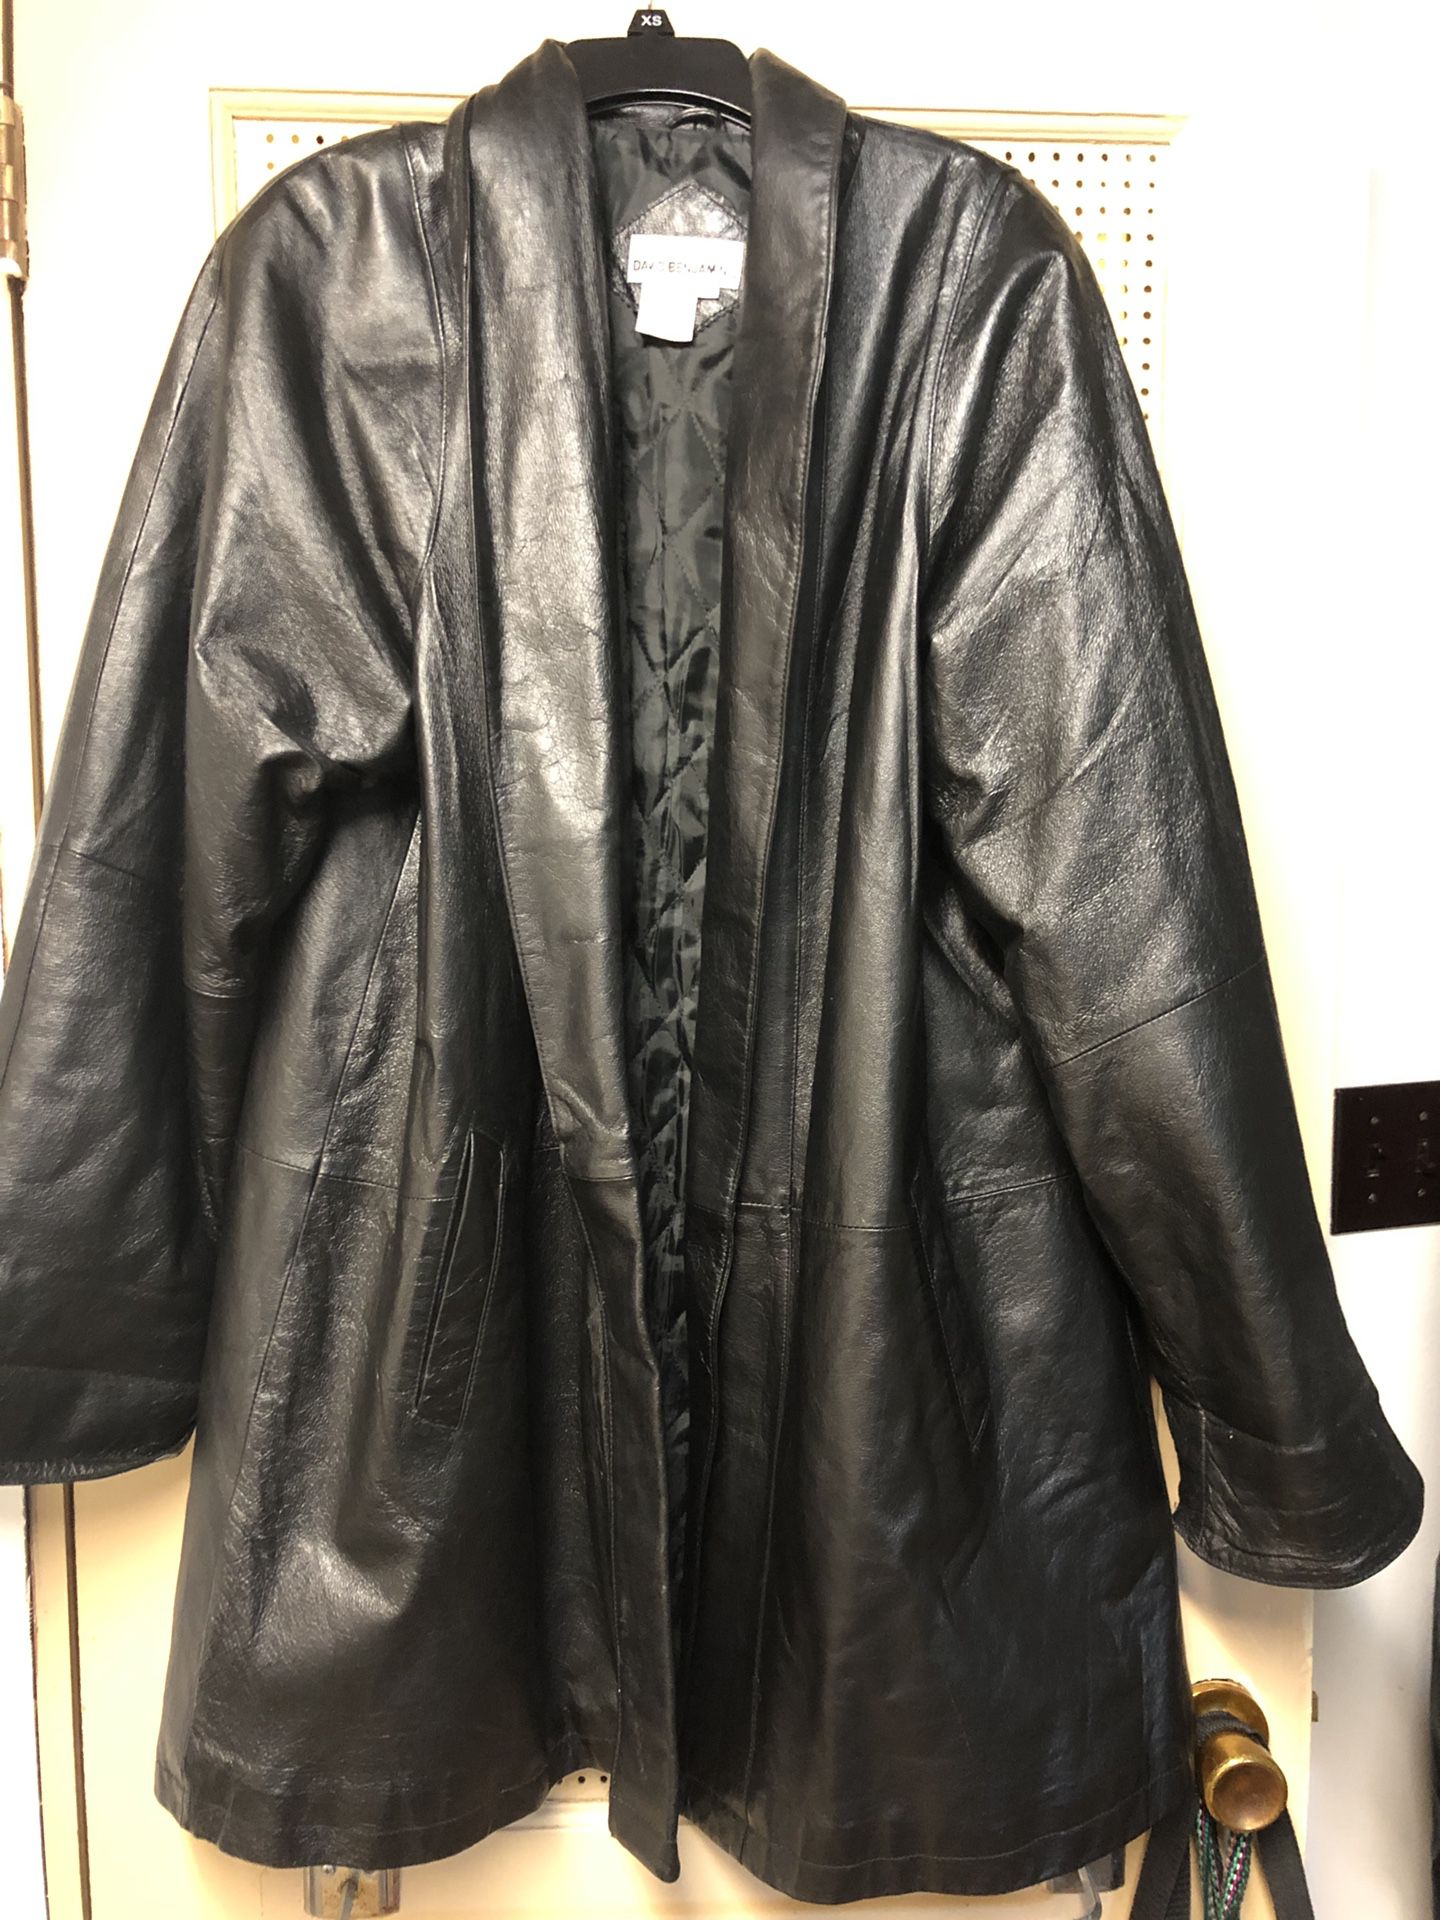 David Benjamin 3/4 length leather jacket.